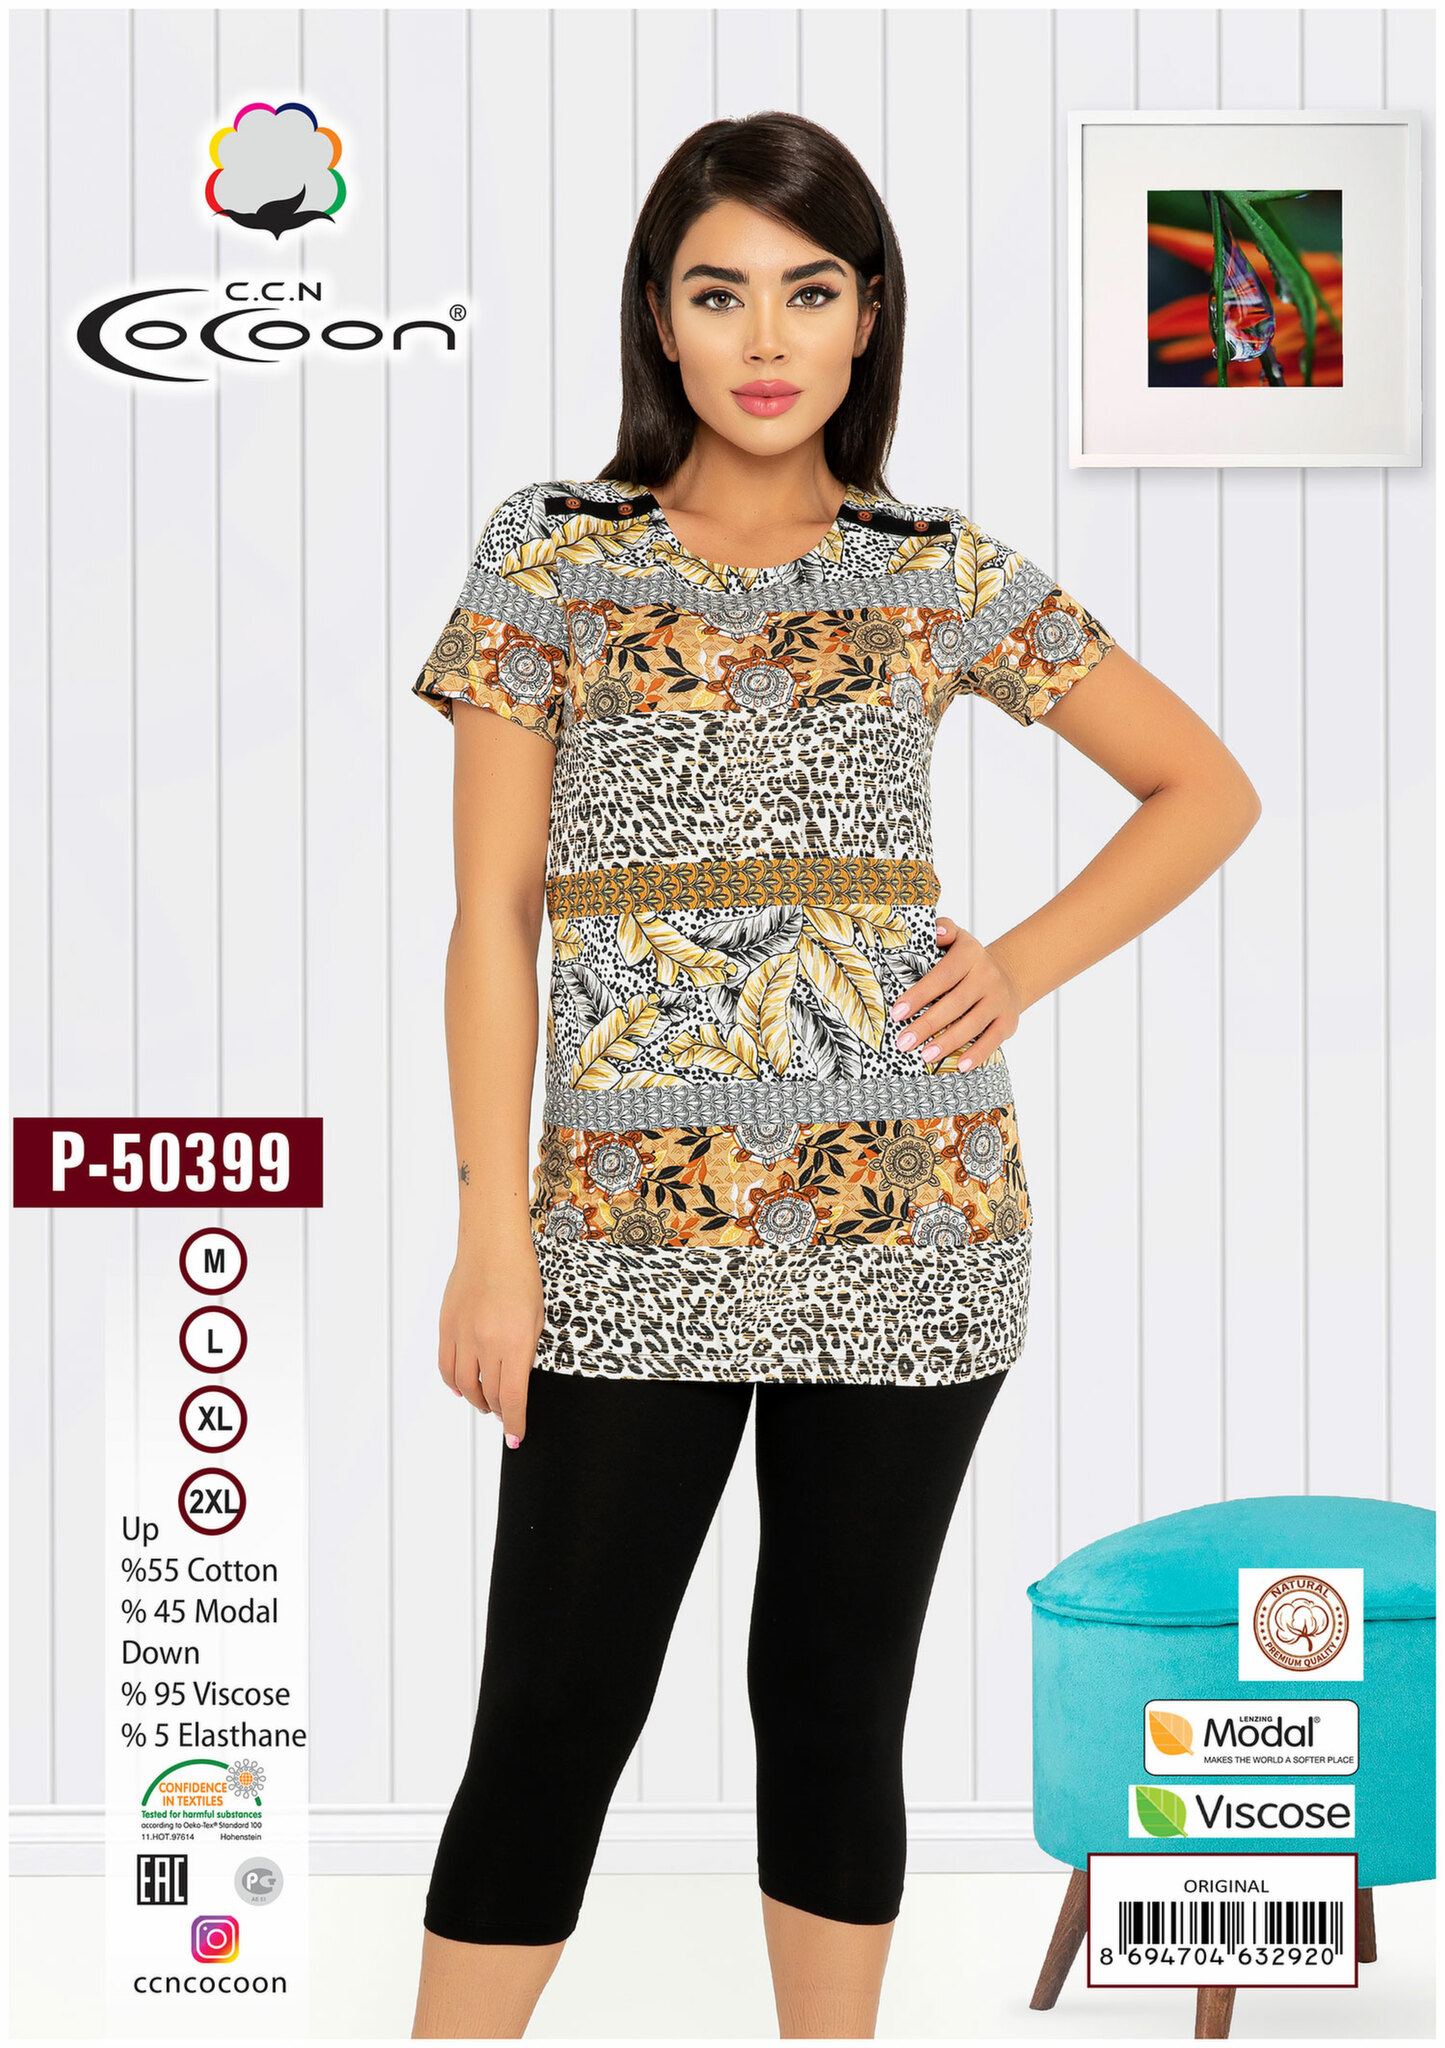 Комплект (футболка, бриджи) P-50399 Cocoon